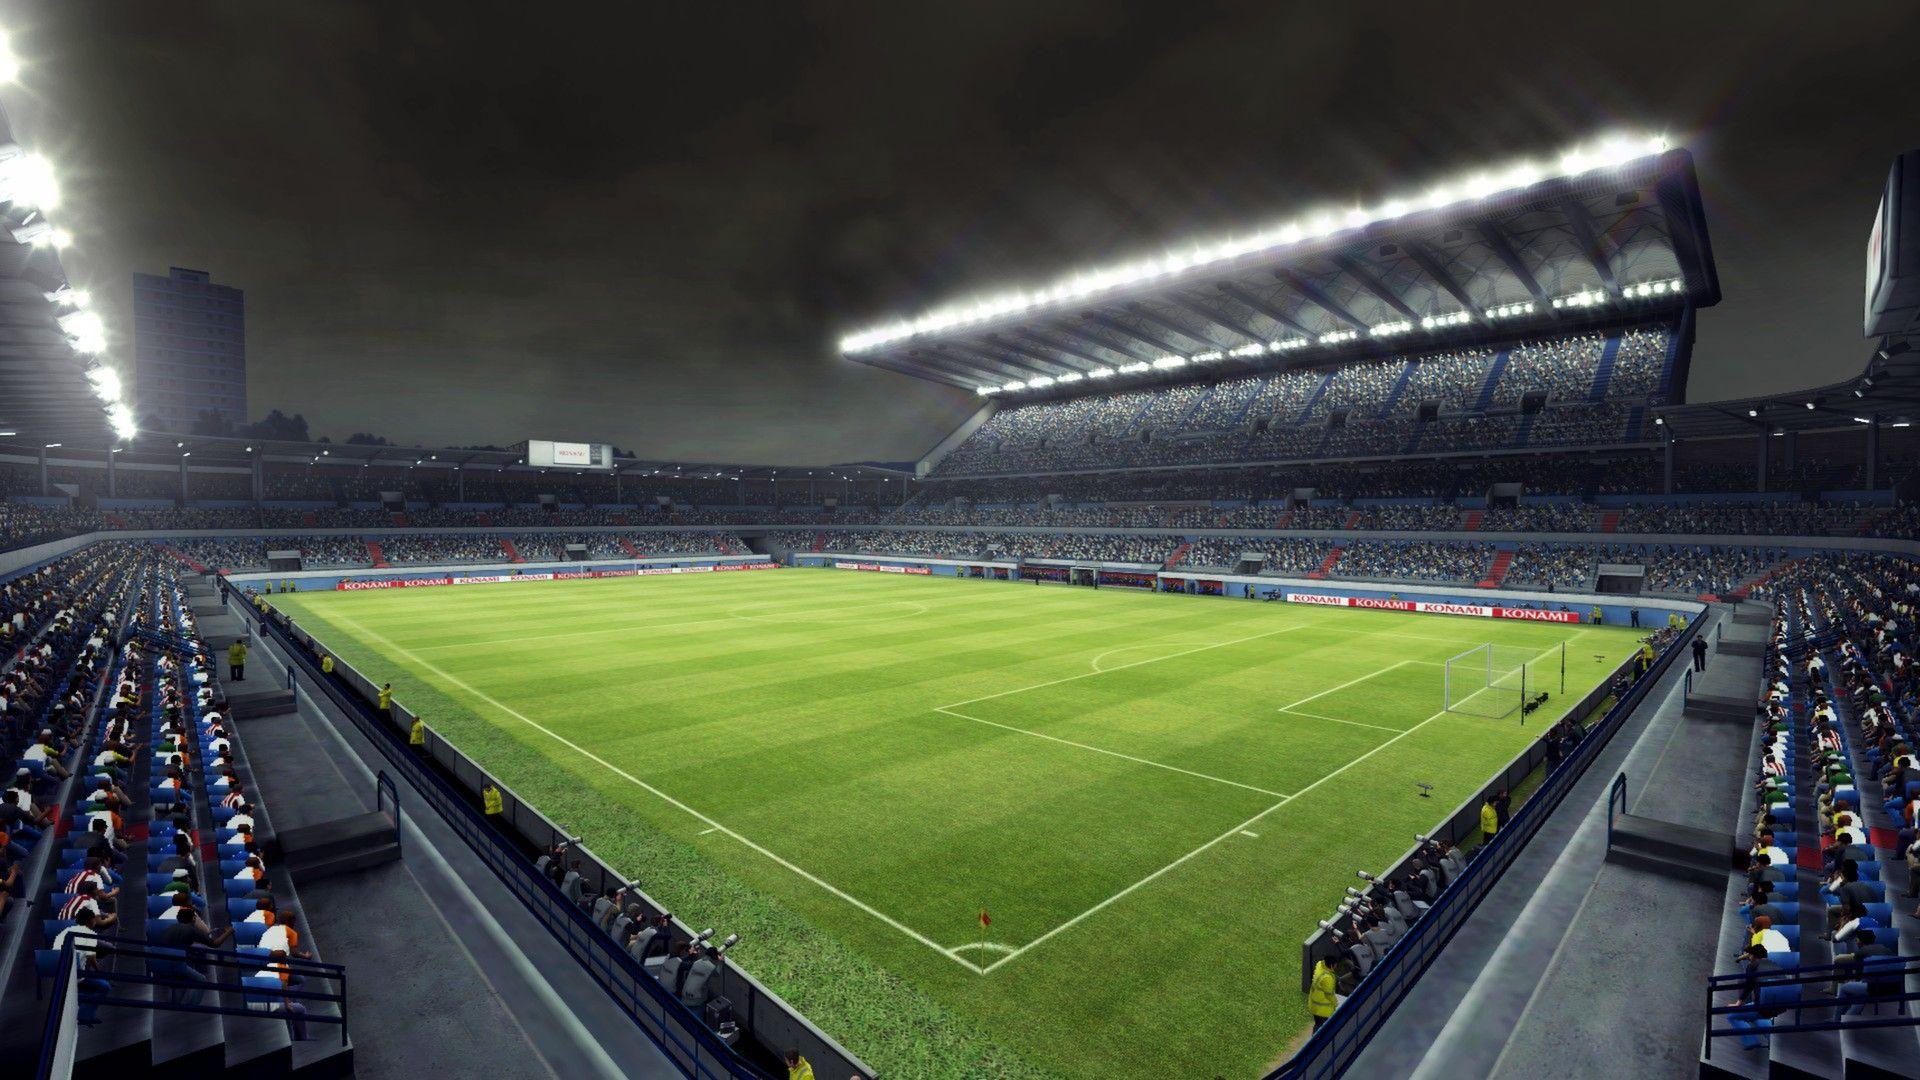 HD Soccer Stadium Wallpaper